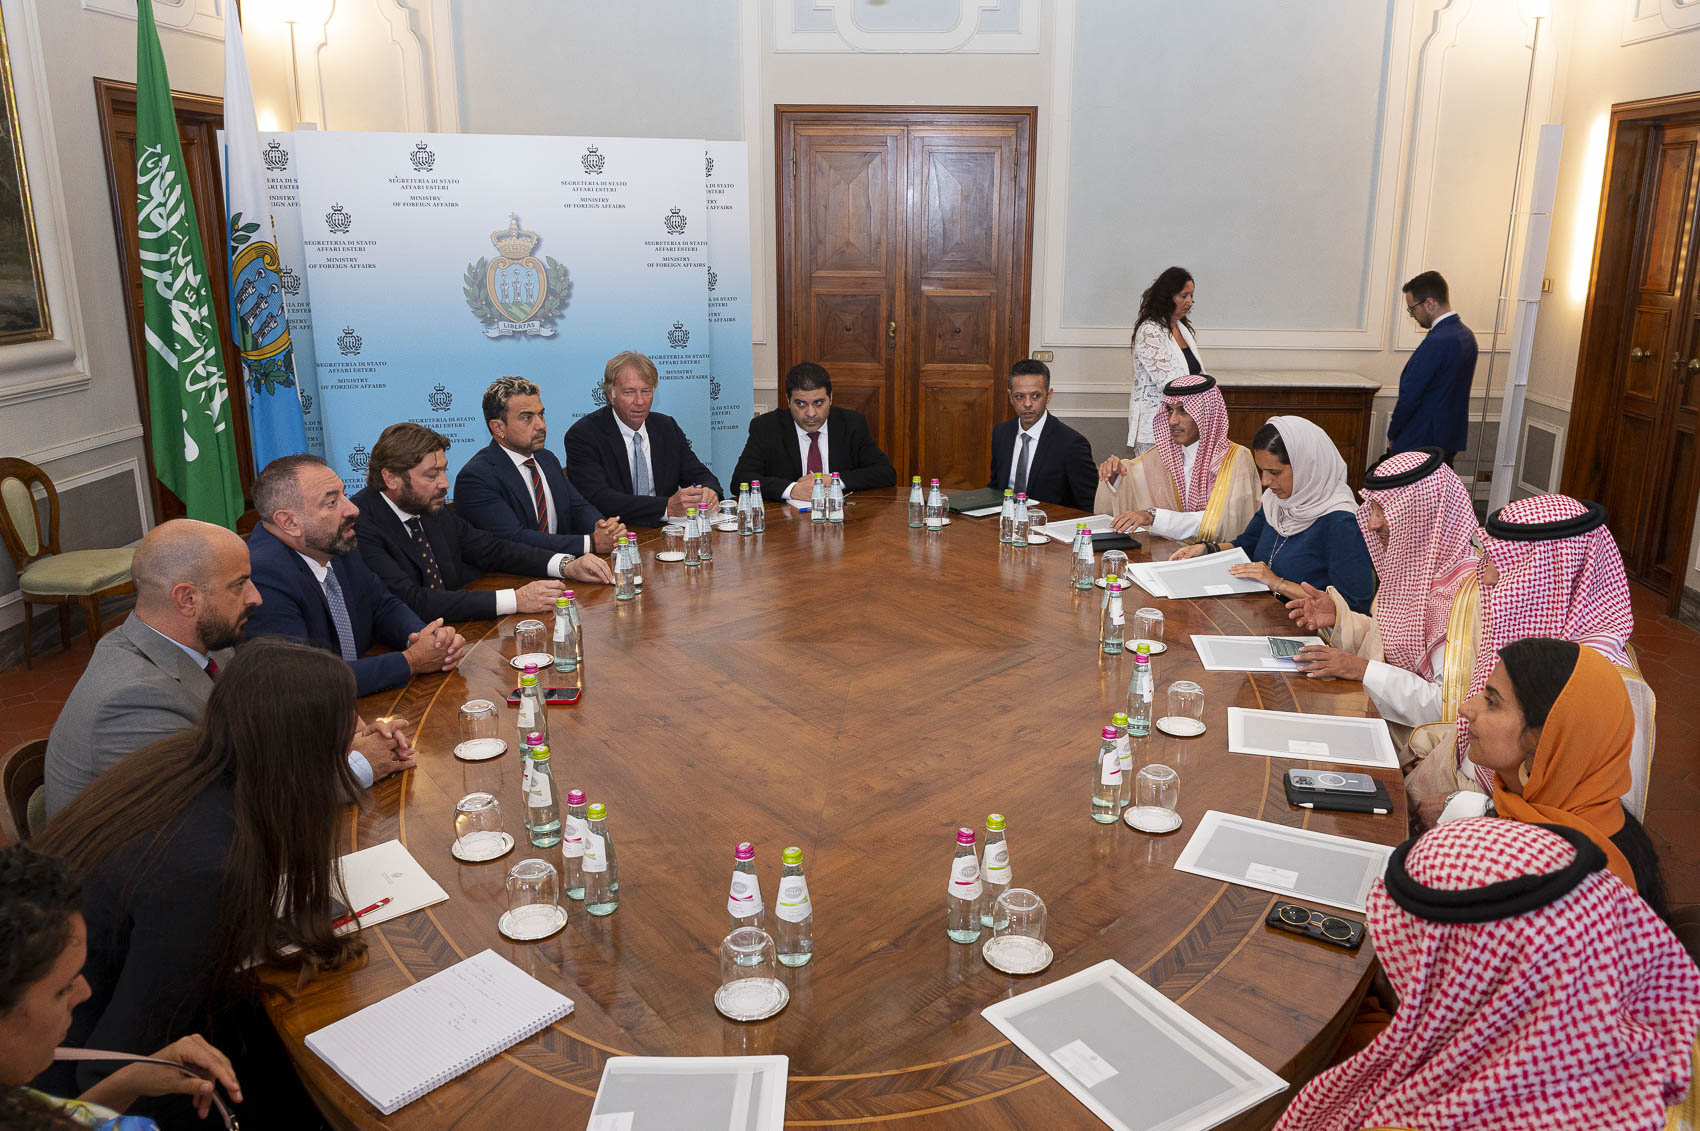 Visita del ministro del Turismo dell’Arabia Saudita a San Marino. Apertura a possibili investimenti sul Titano